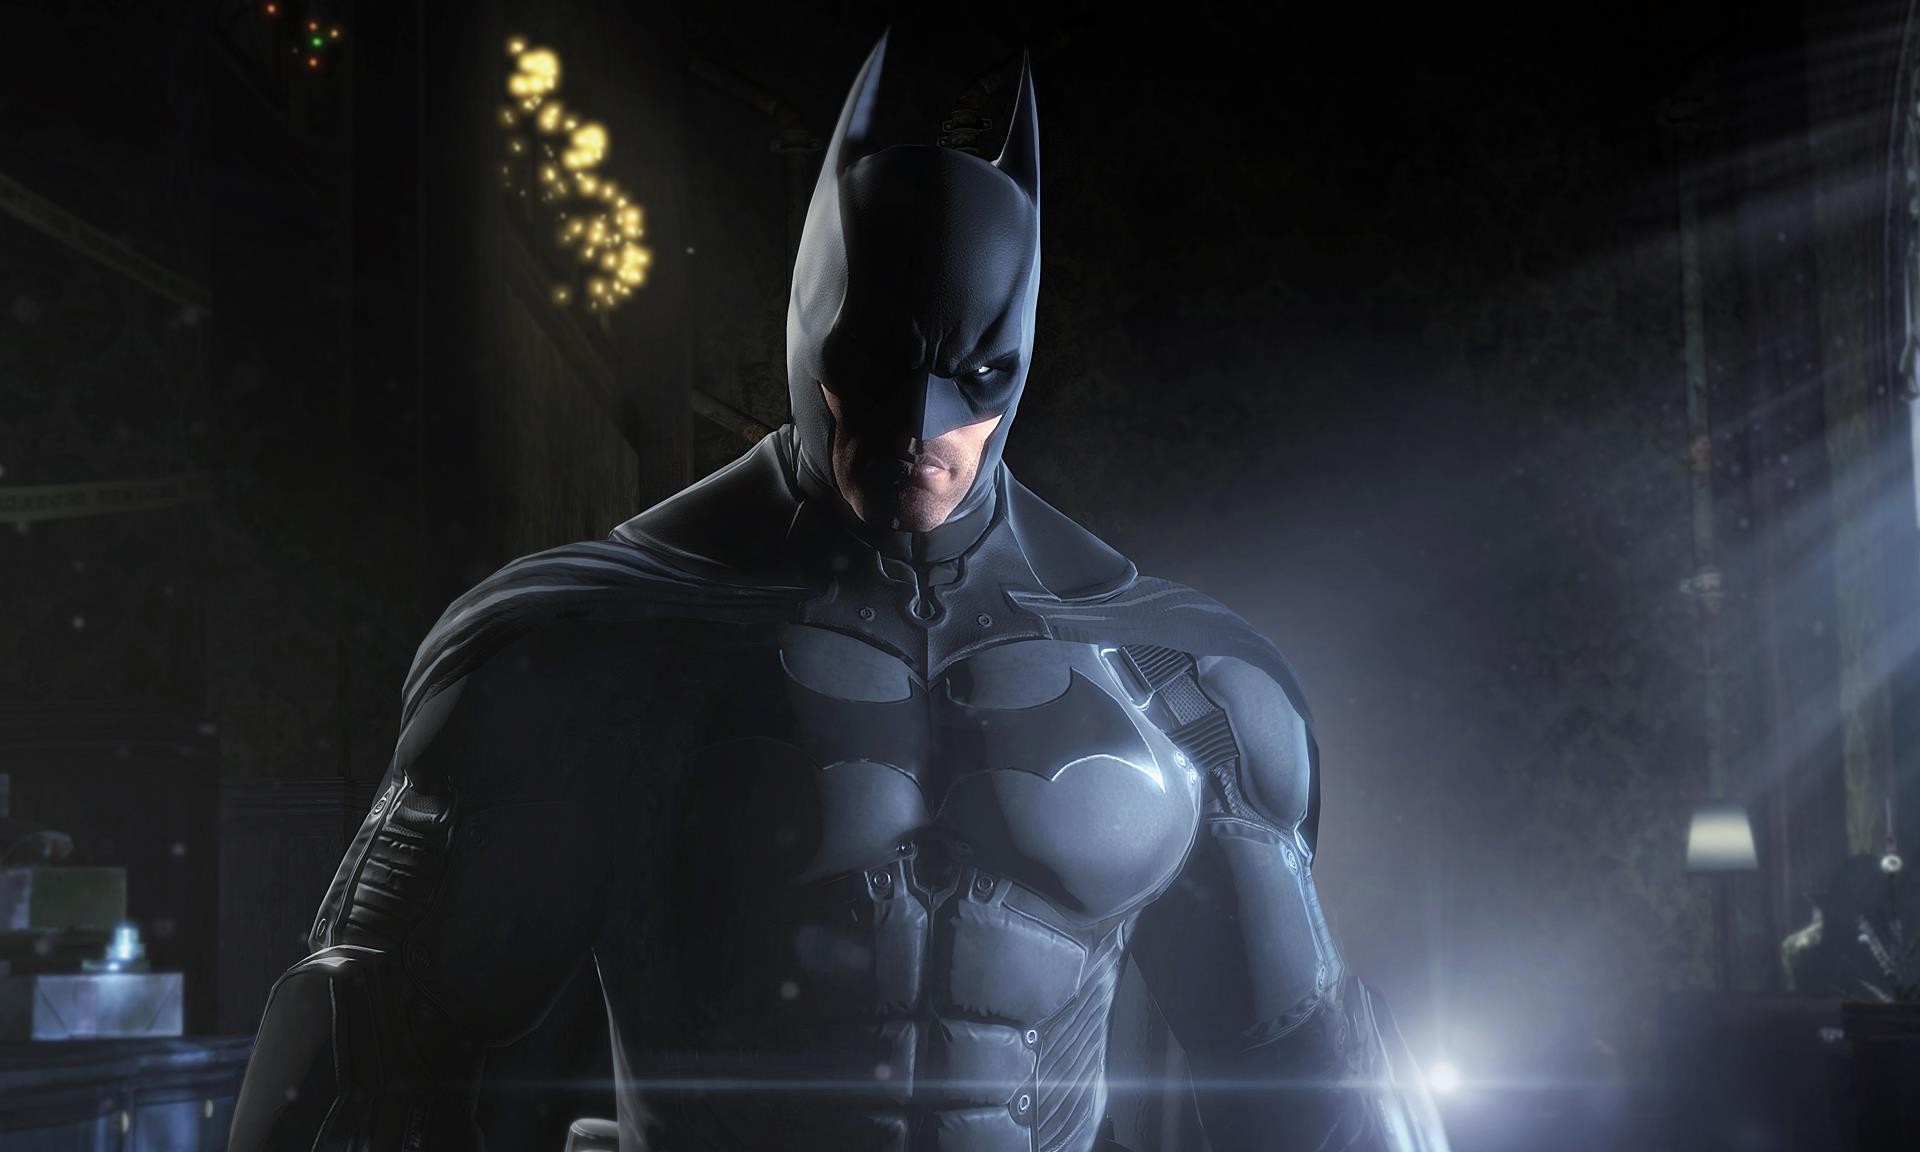 Batman Arkham Asylum Xbox 360 mídia física origina - Desconto no Preço